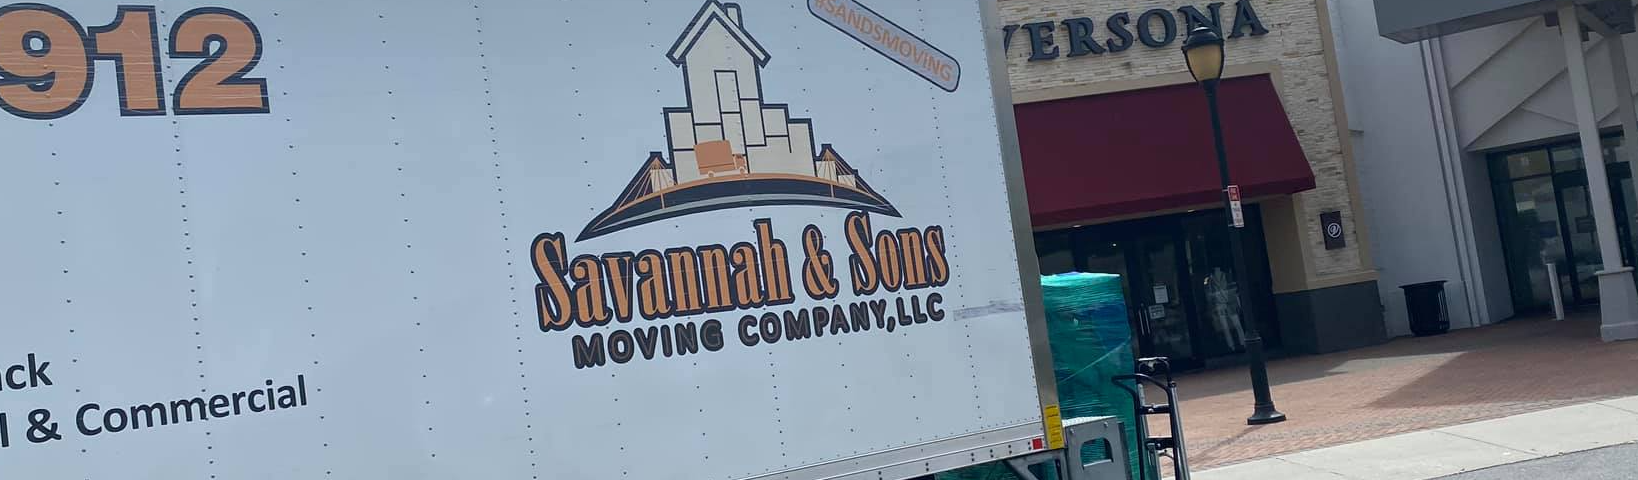 Savannah & Sons Moving Company